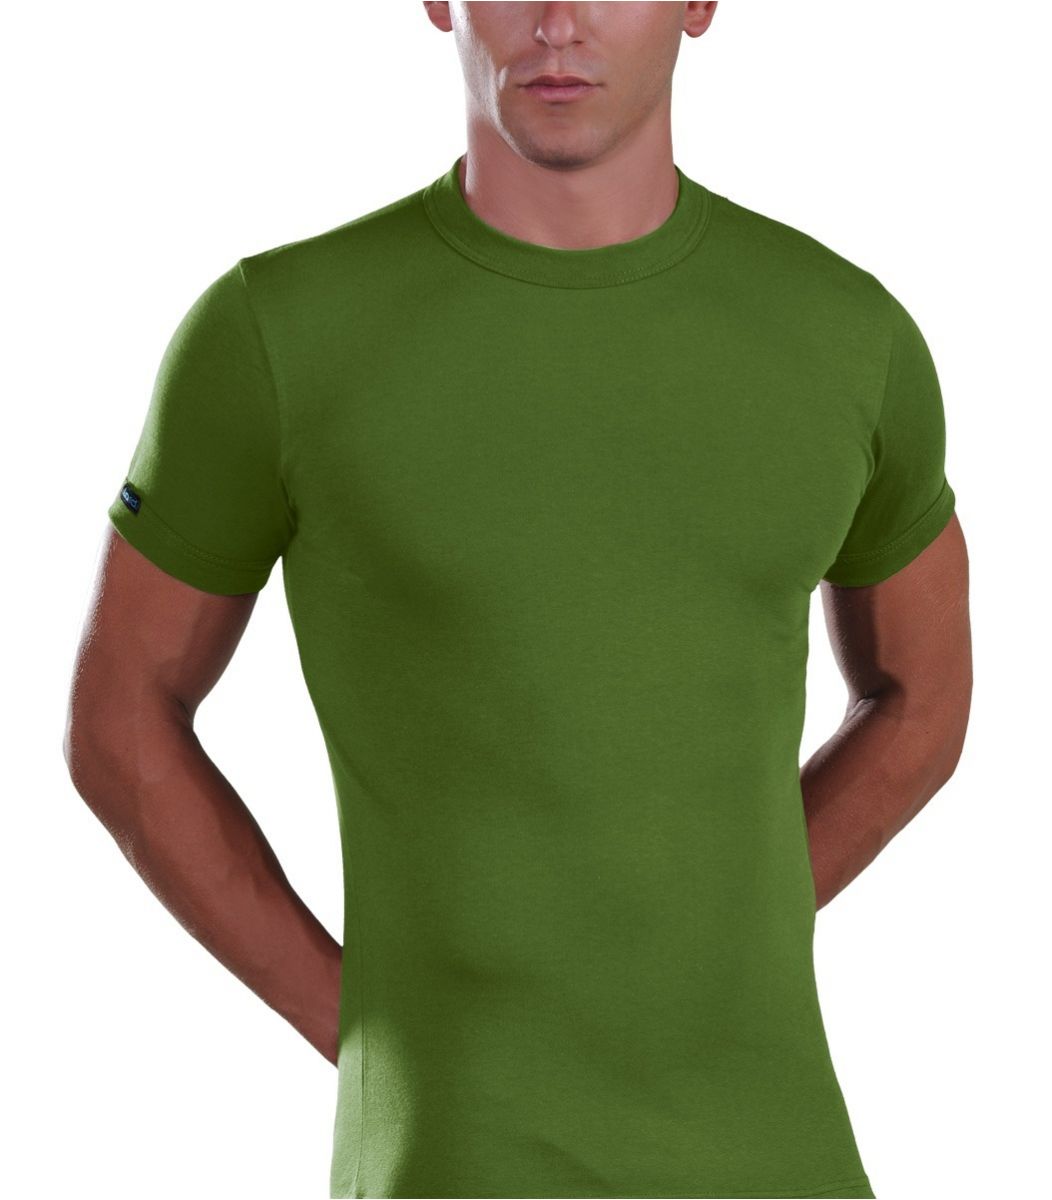 T-Shirt, crew neck, green